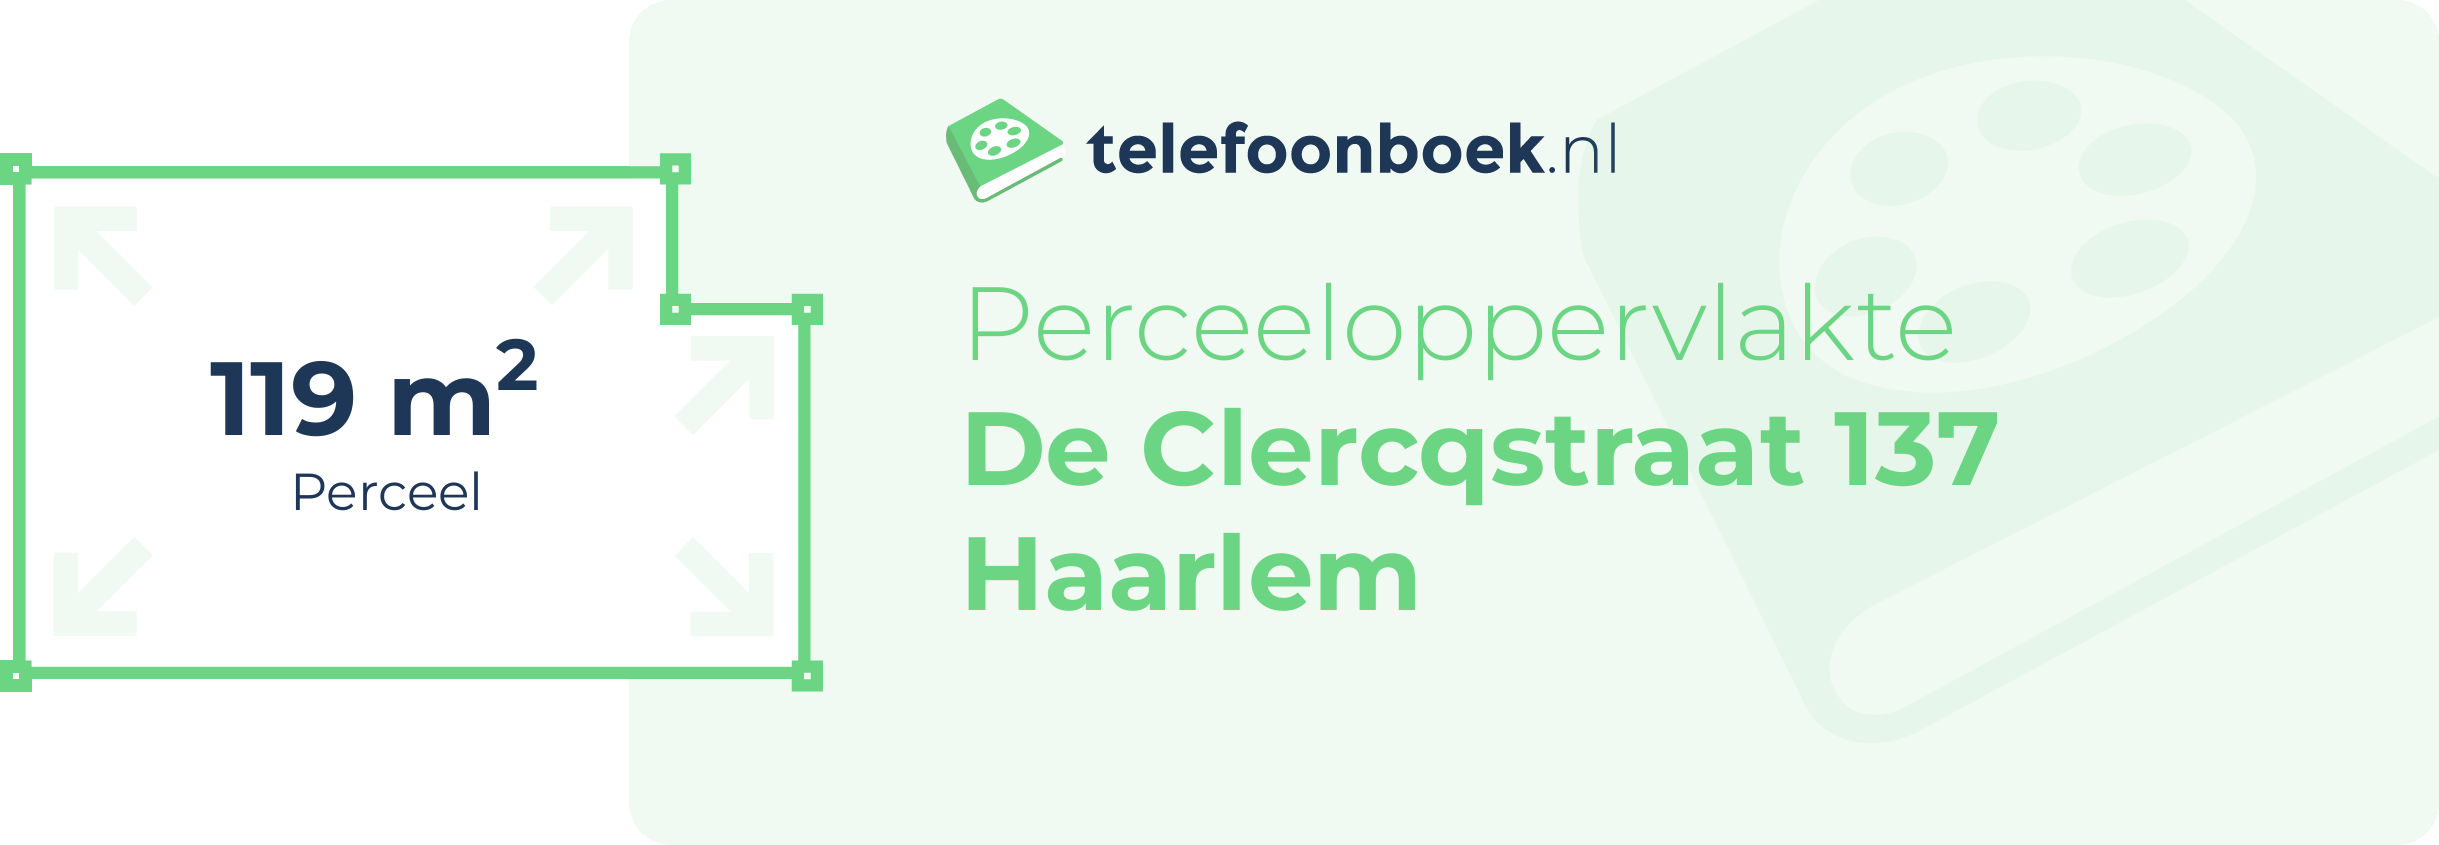 Perceeloppervlakte De Clercqstraat 137 Haarlem